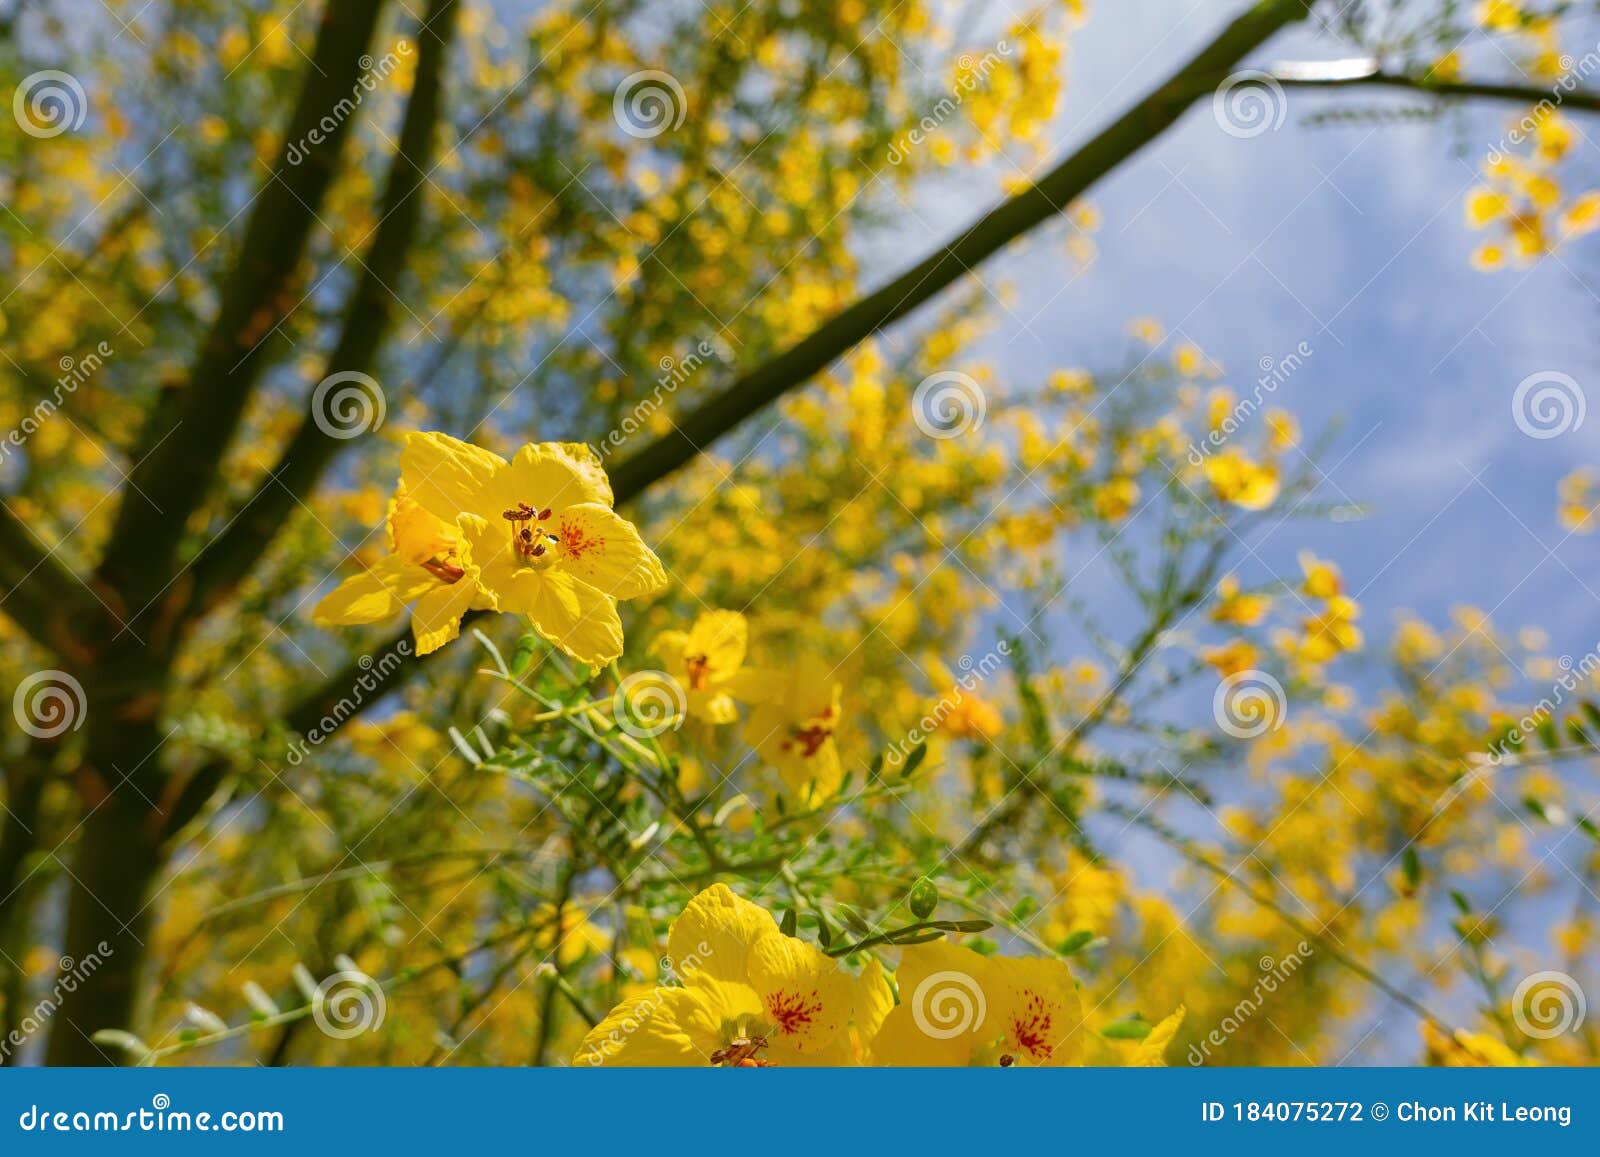 sunny view of parkinsonia florida blossom